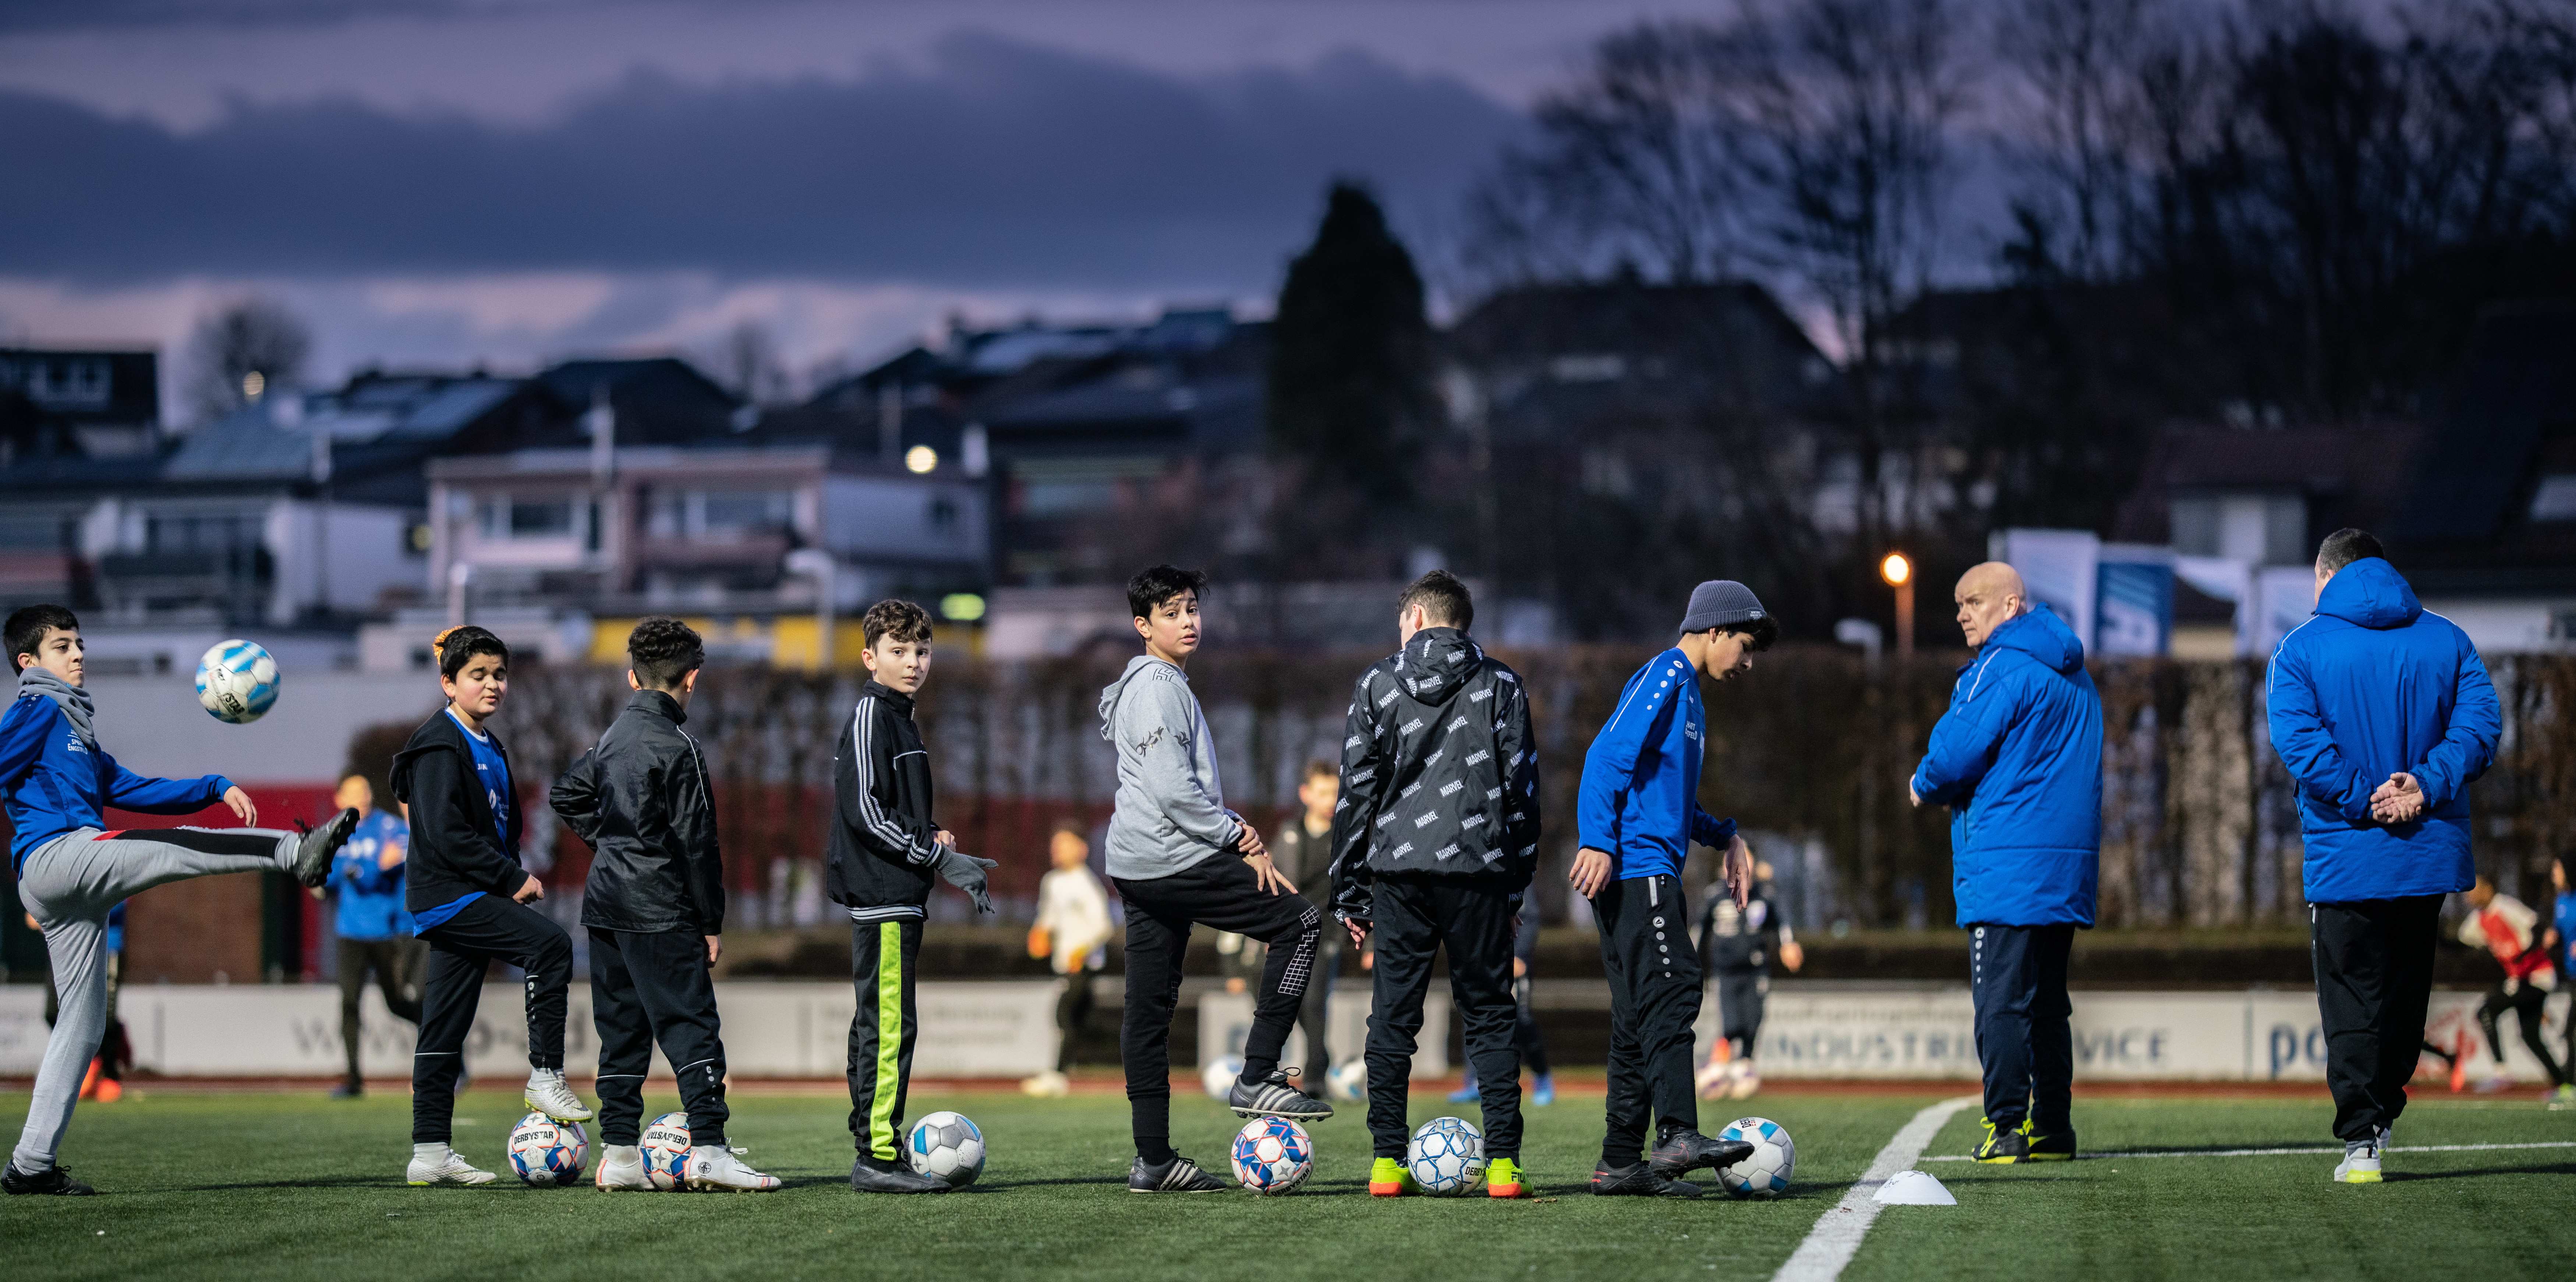 Kinder beim Training auf einem Fußballplatz Foto: Jakob Studnar